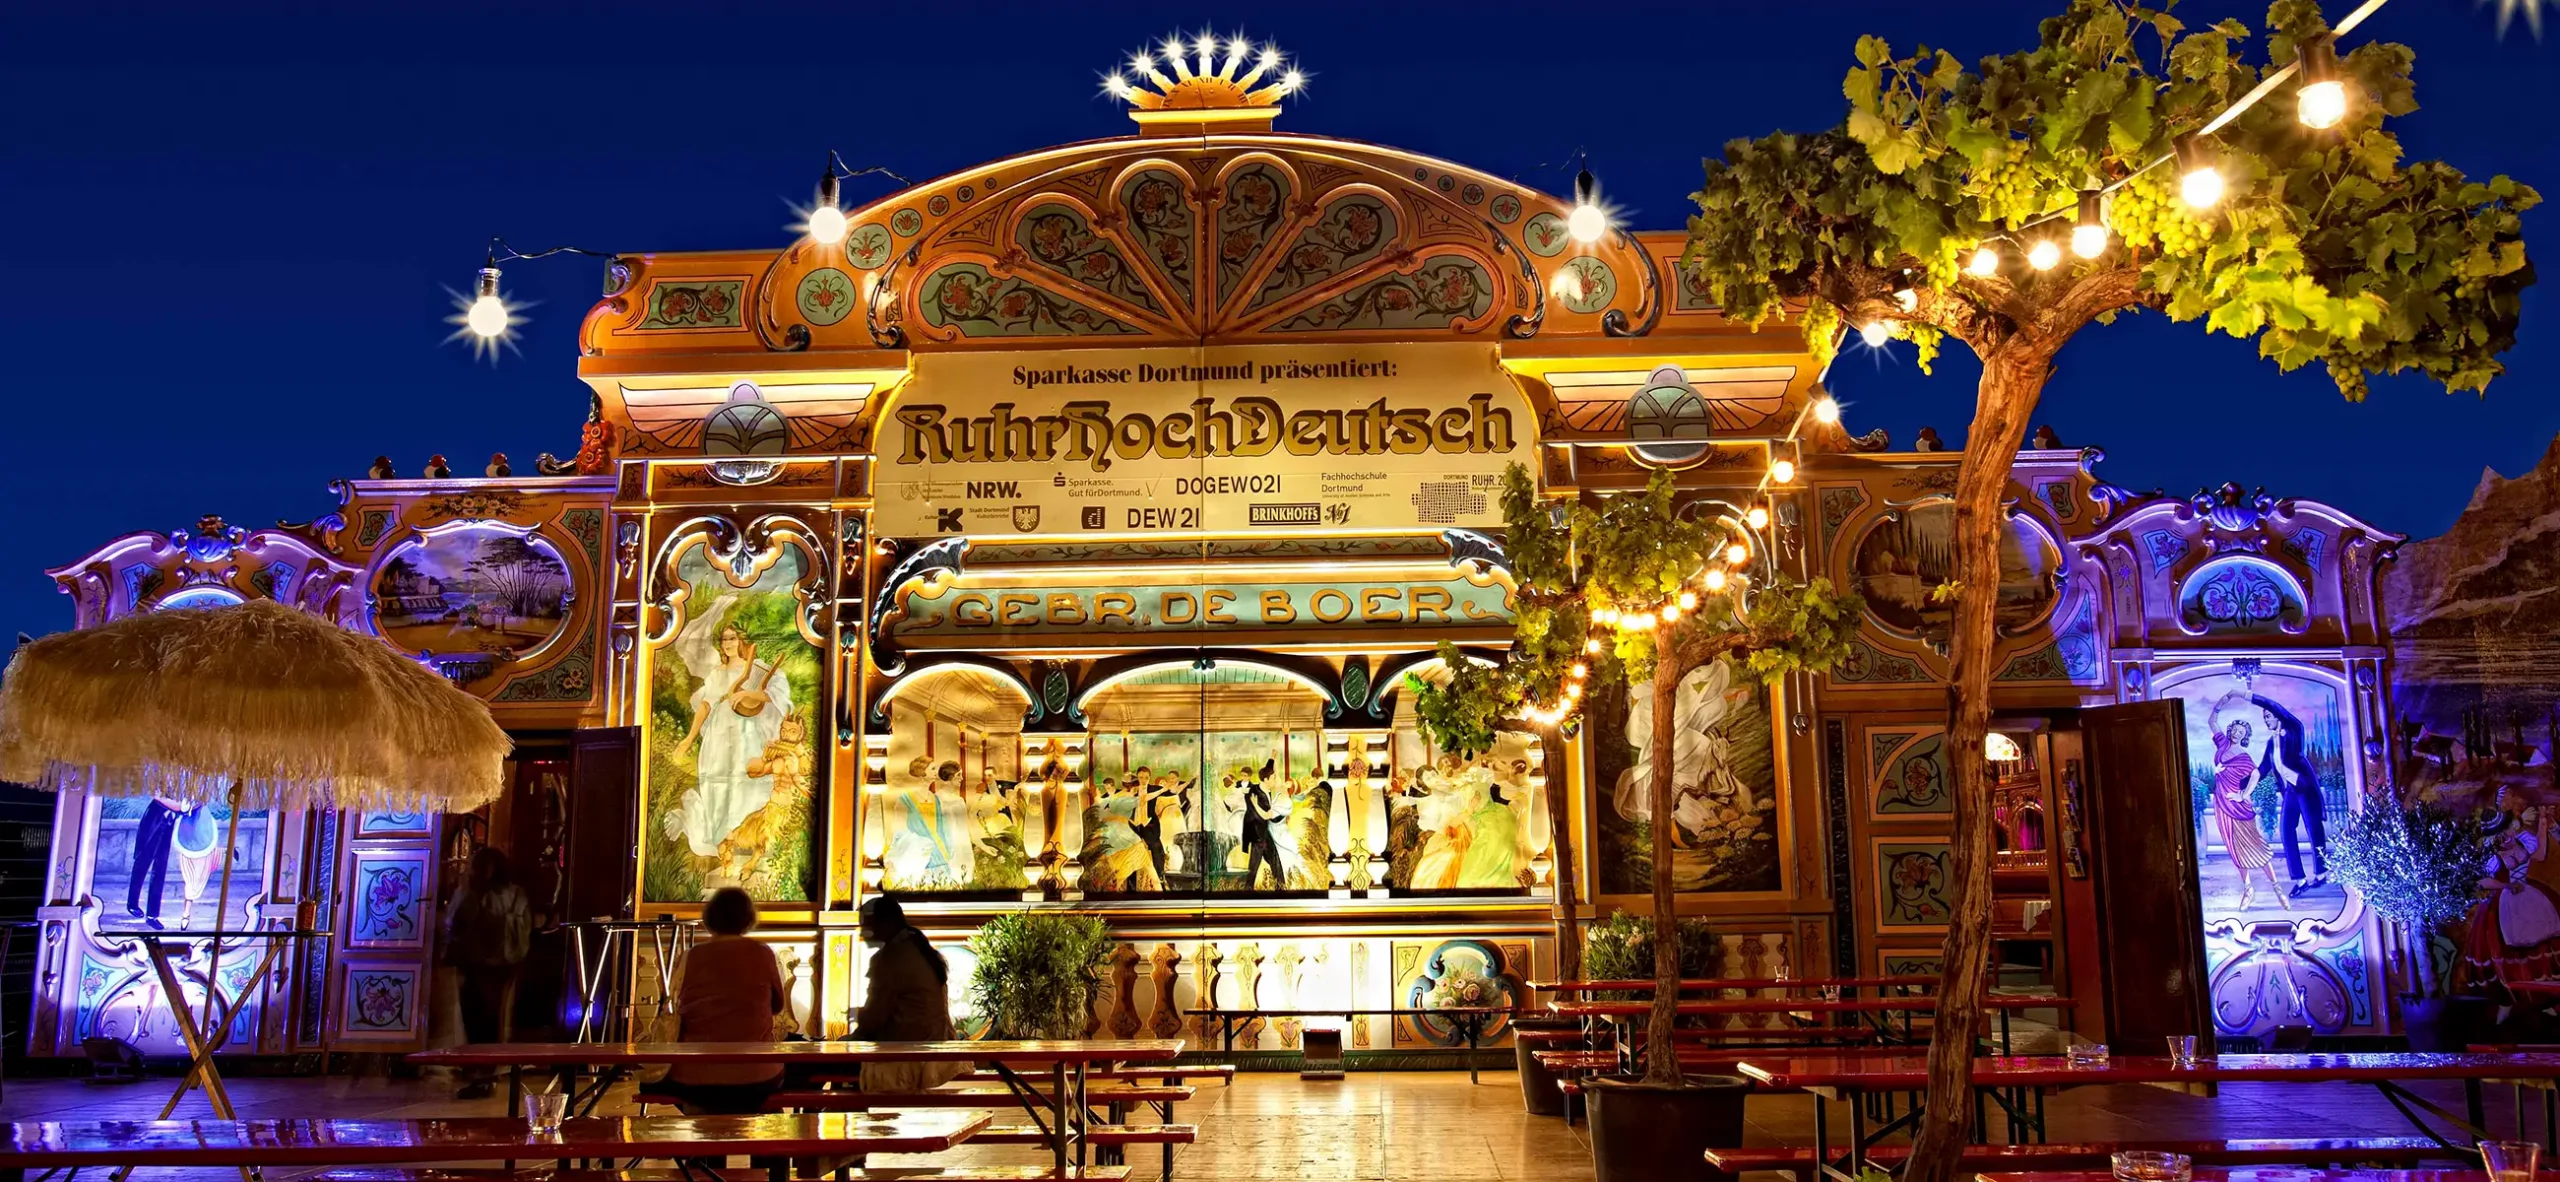 Beleuchtete Fassade vom historischen Spiegelzelt (rechteckig) von Intersettle Zeltverleih für das kann man die Festival Ruhrhochdeutsch in Dortmund